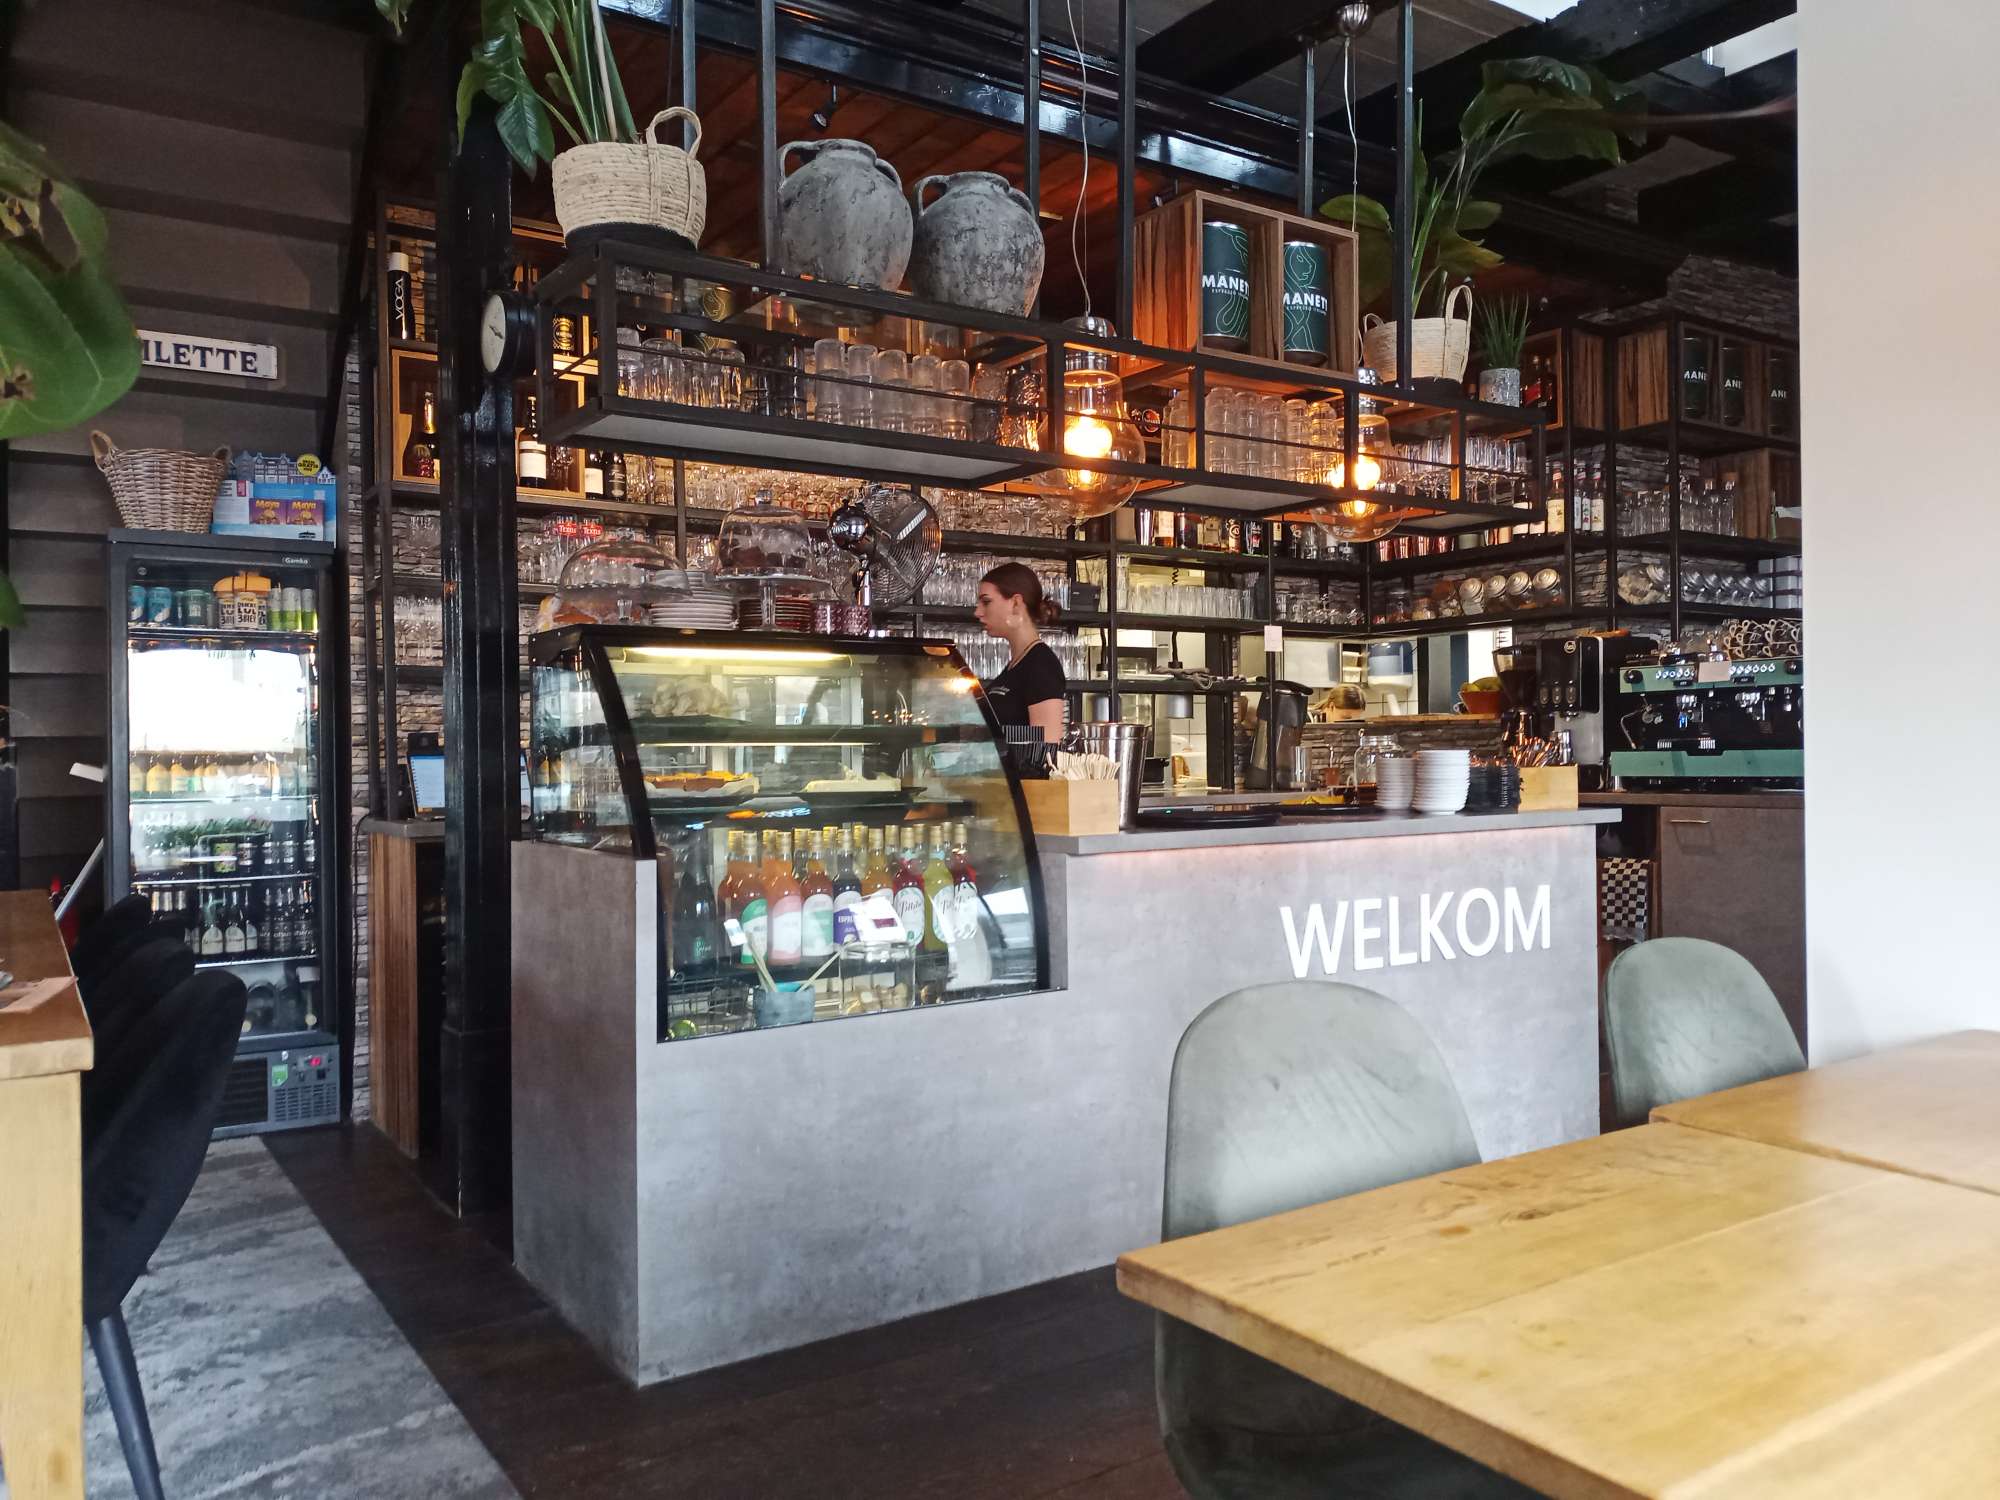 Een grijze bar met Welkom erop, daar boven een vitrine met gebak, een koffie automaat en diverse likeuren en glazen.